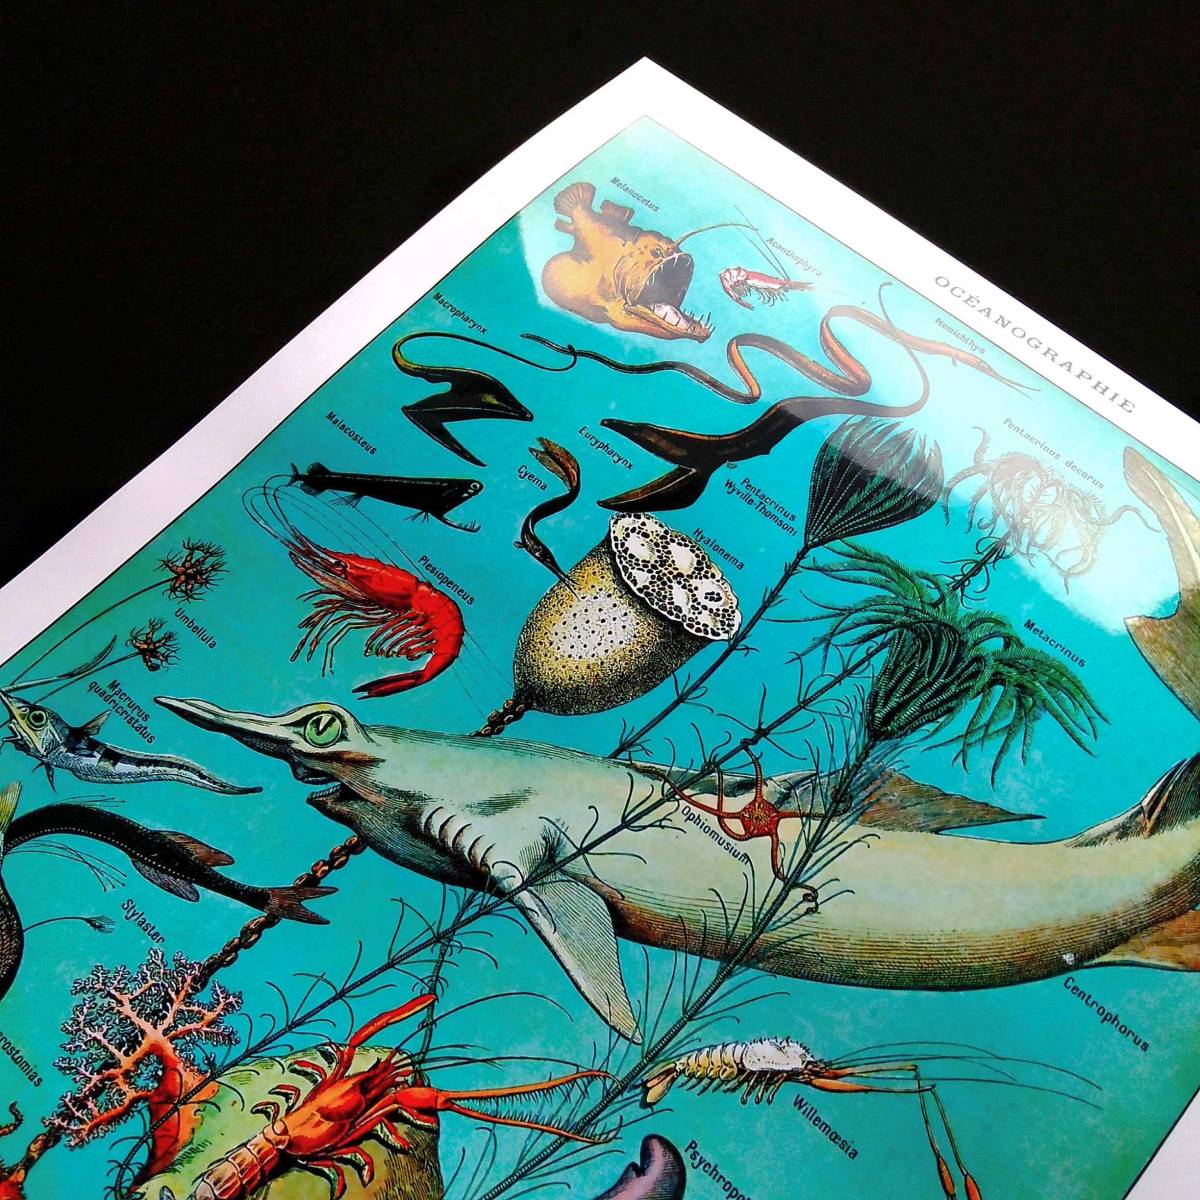  глубокий море рыба живое существо иллюстрированная книга chart Vintage иллюстрации глянец постер A3 балка Cafe living интерьер Classic сова nagi Glo tesk